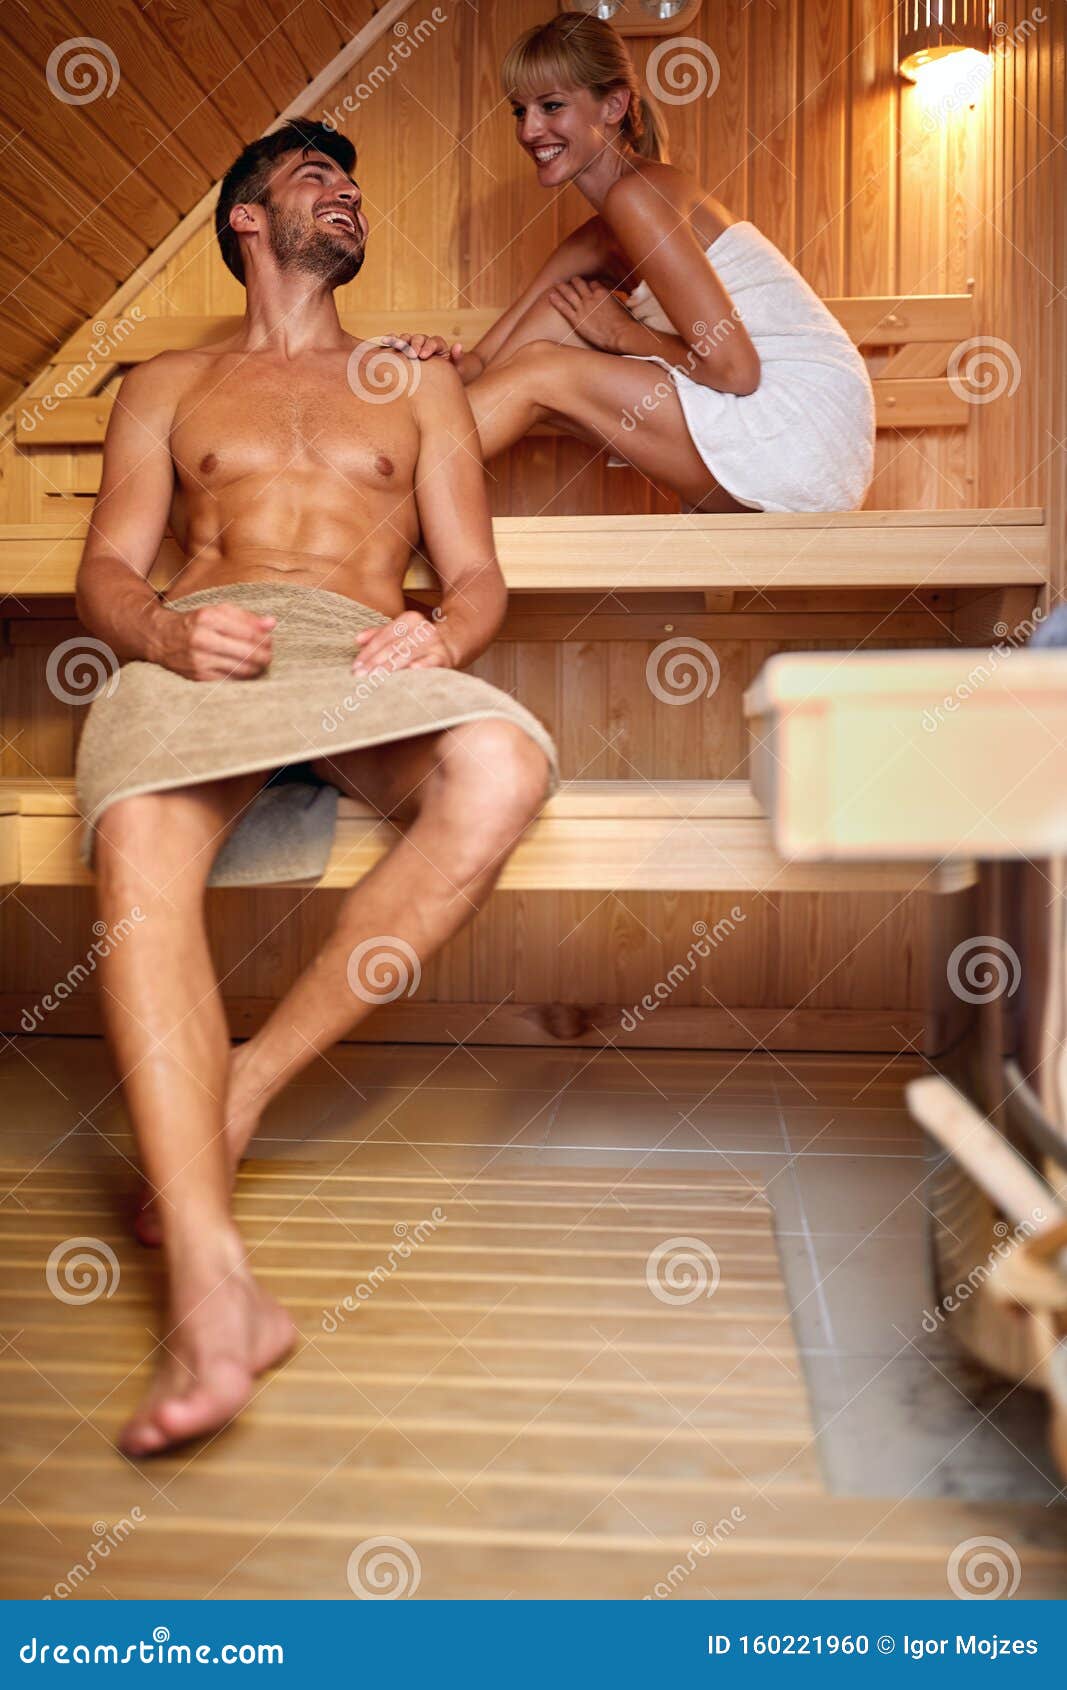 голых женщины и мужчина вместе в бане фото 103